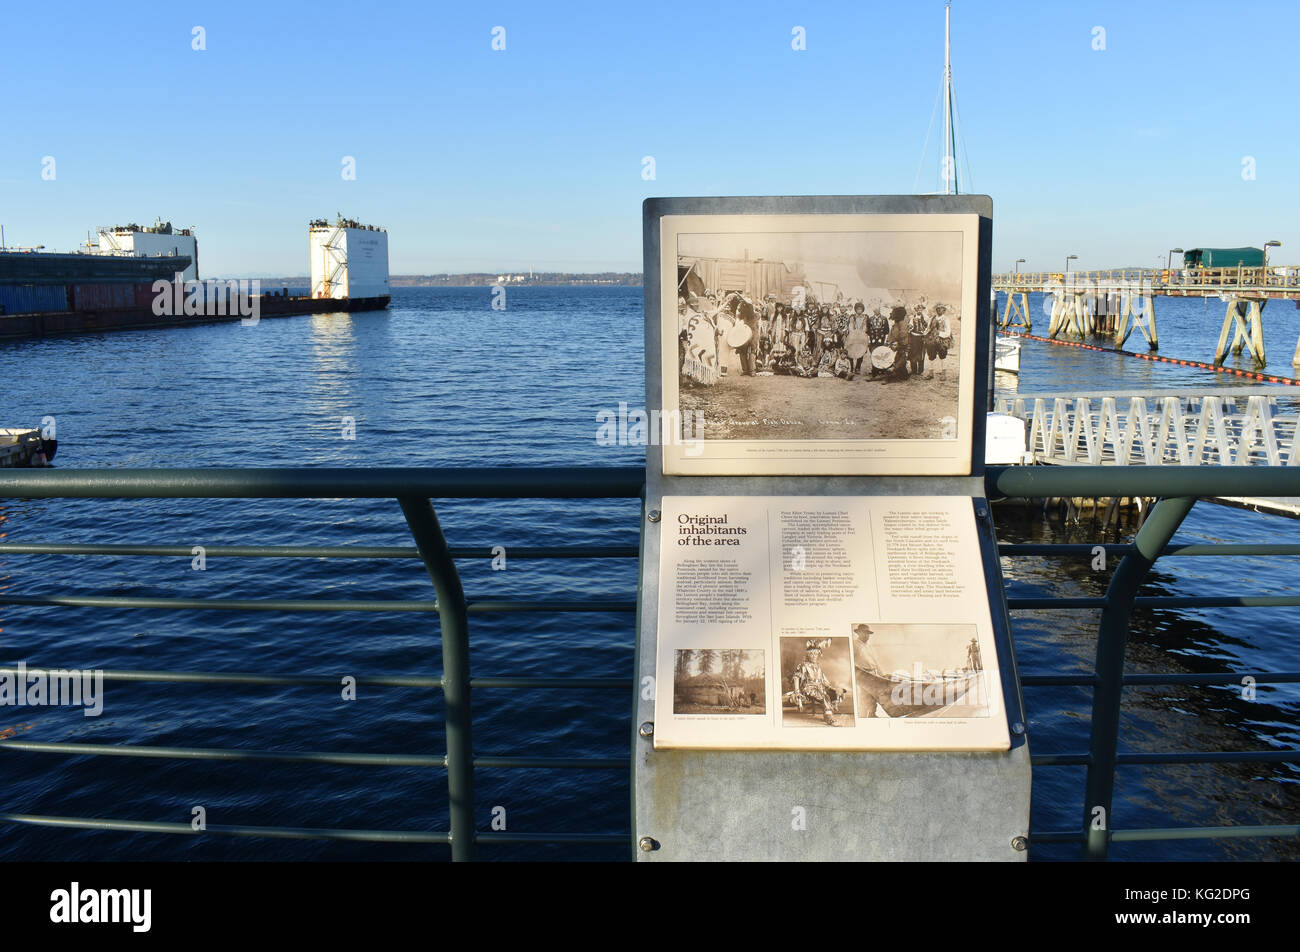 Geschichte der ursprünglichen Bewohner der Bellingham Bay Area. Alte Fotos und die Geschichte sind vor ein Geländer an der Bellingham Cruise Te Stockfoto